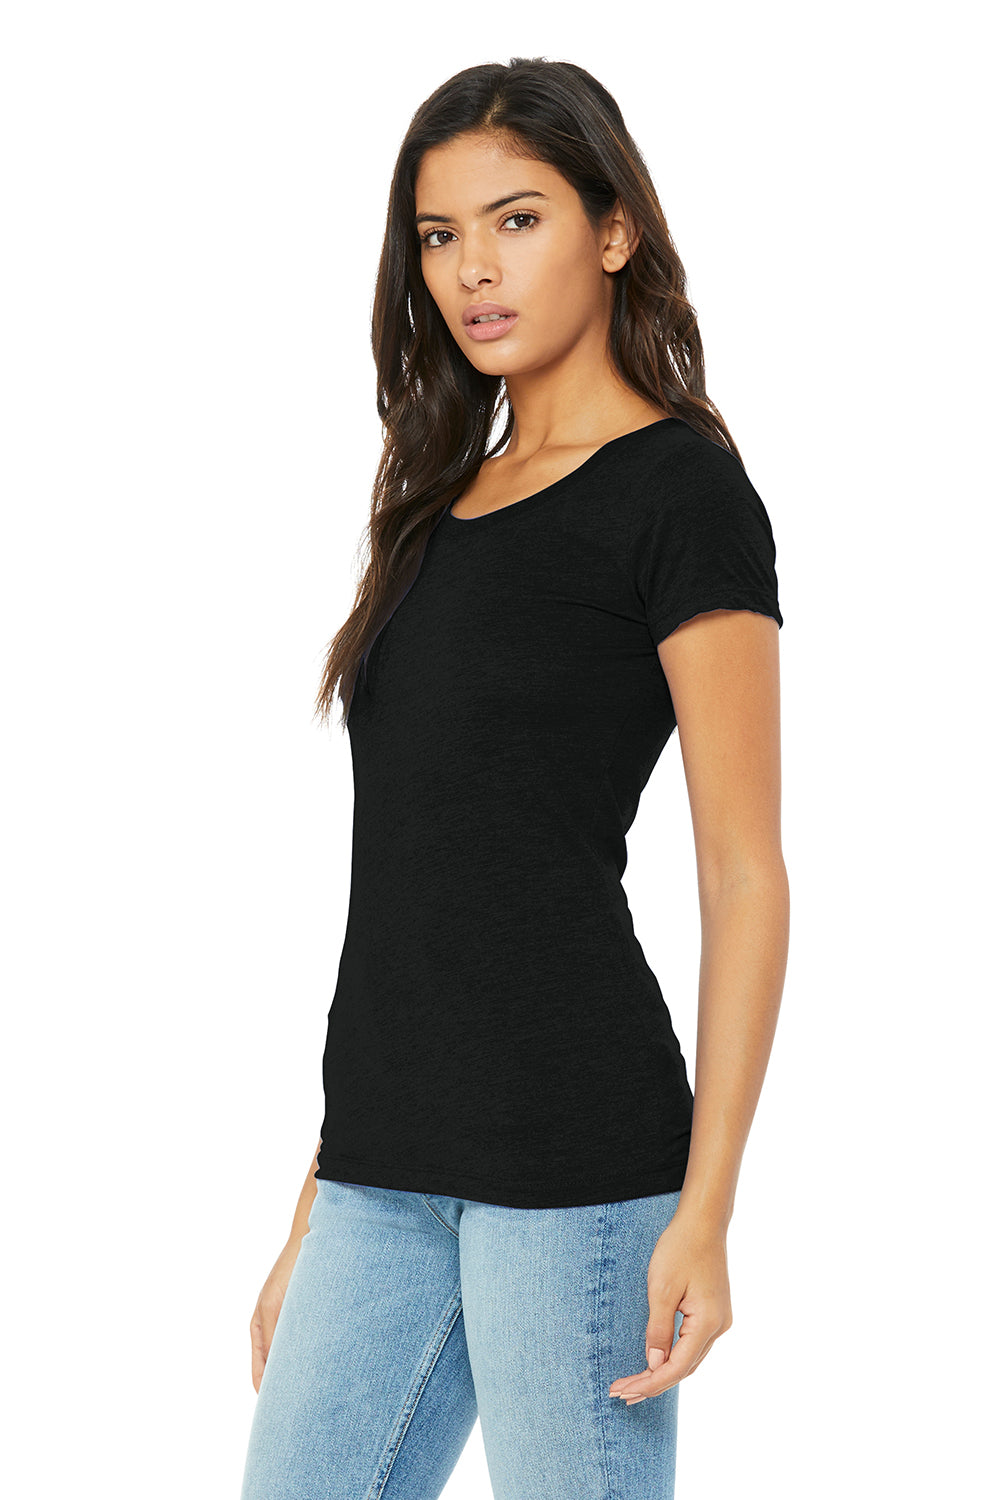 Bella + Canvas BC8413/B8413/8413 Womens Short Sleeve Crewneck T-Shirt Solid Black Model 3Q